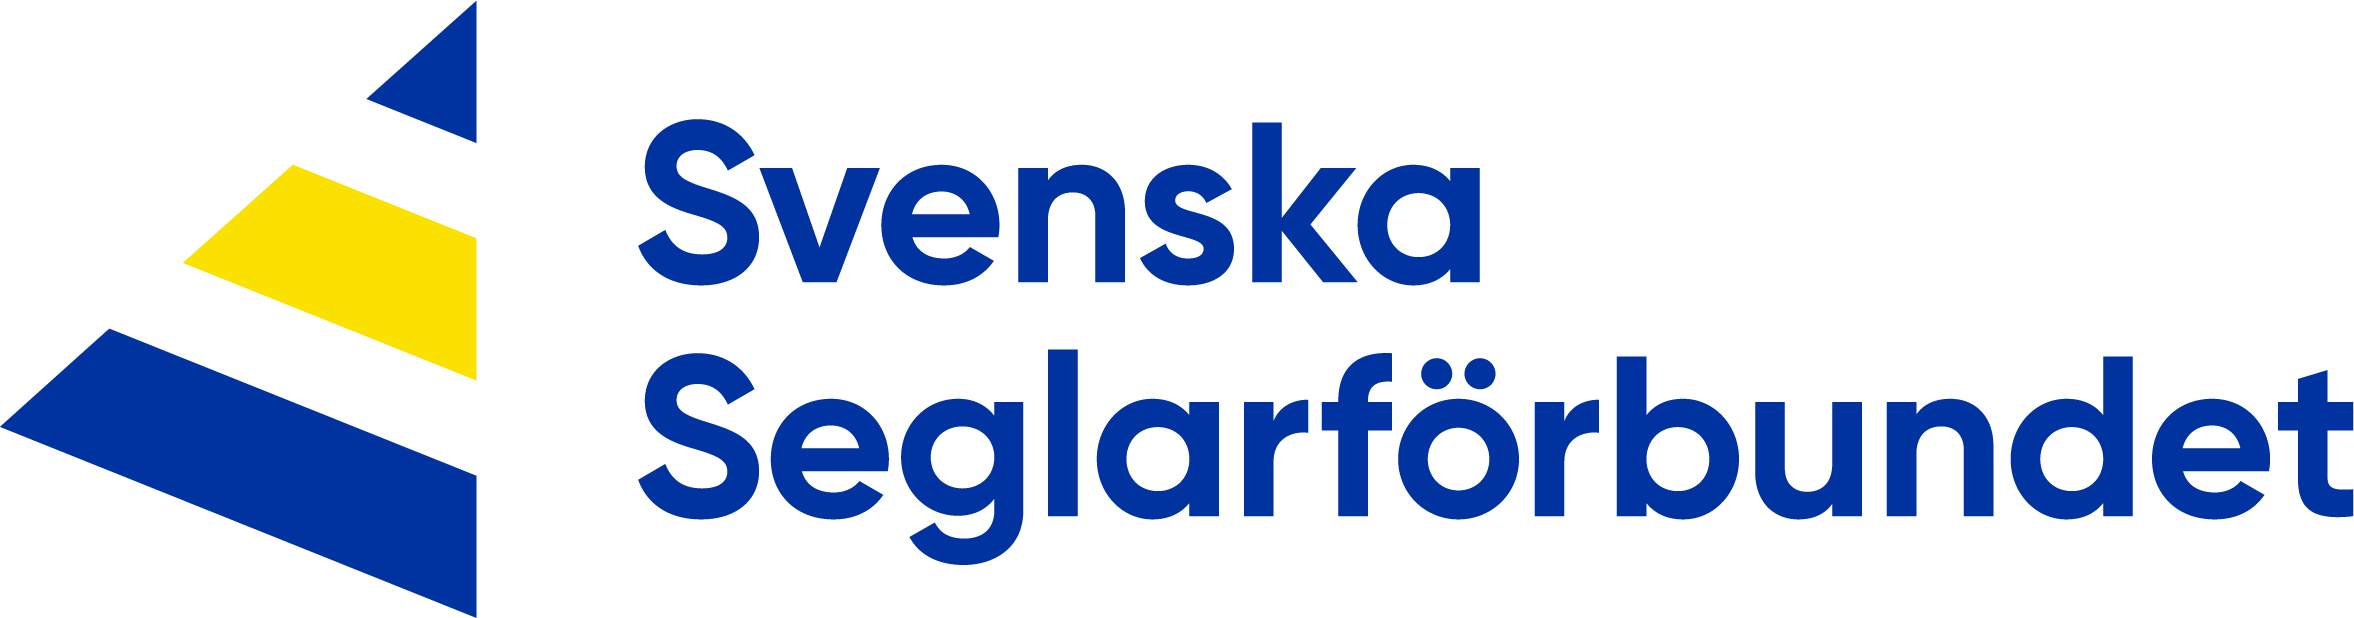 Logo svensk seglarförbundet